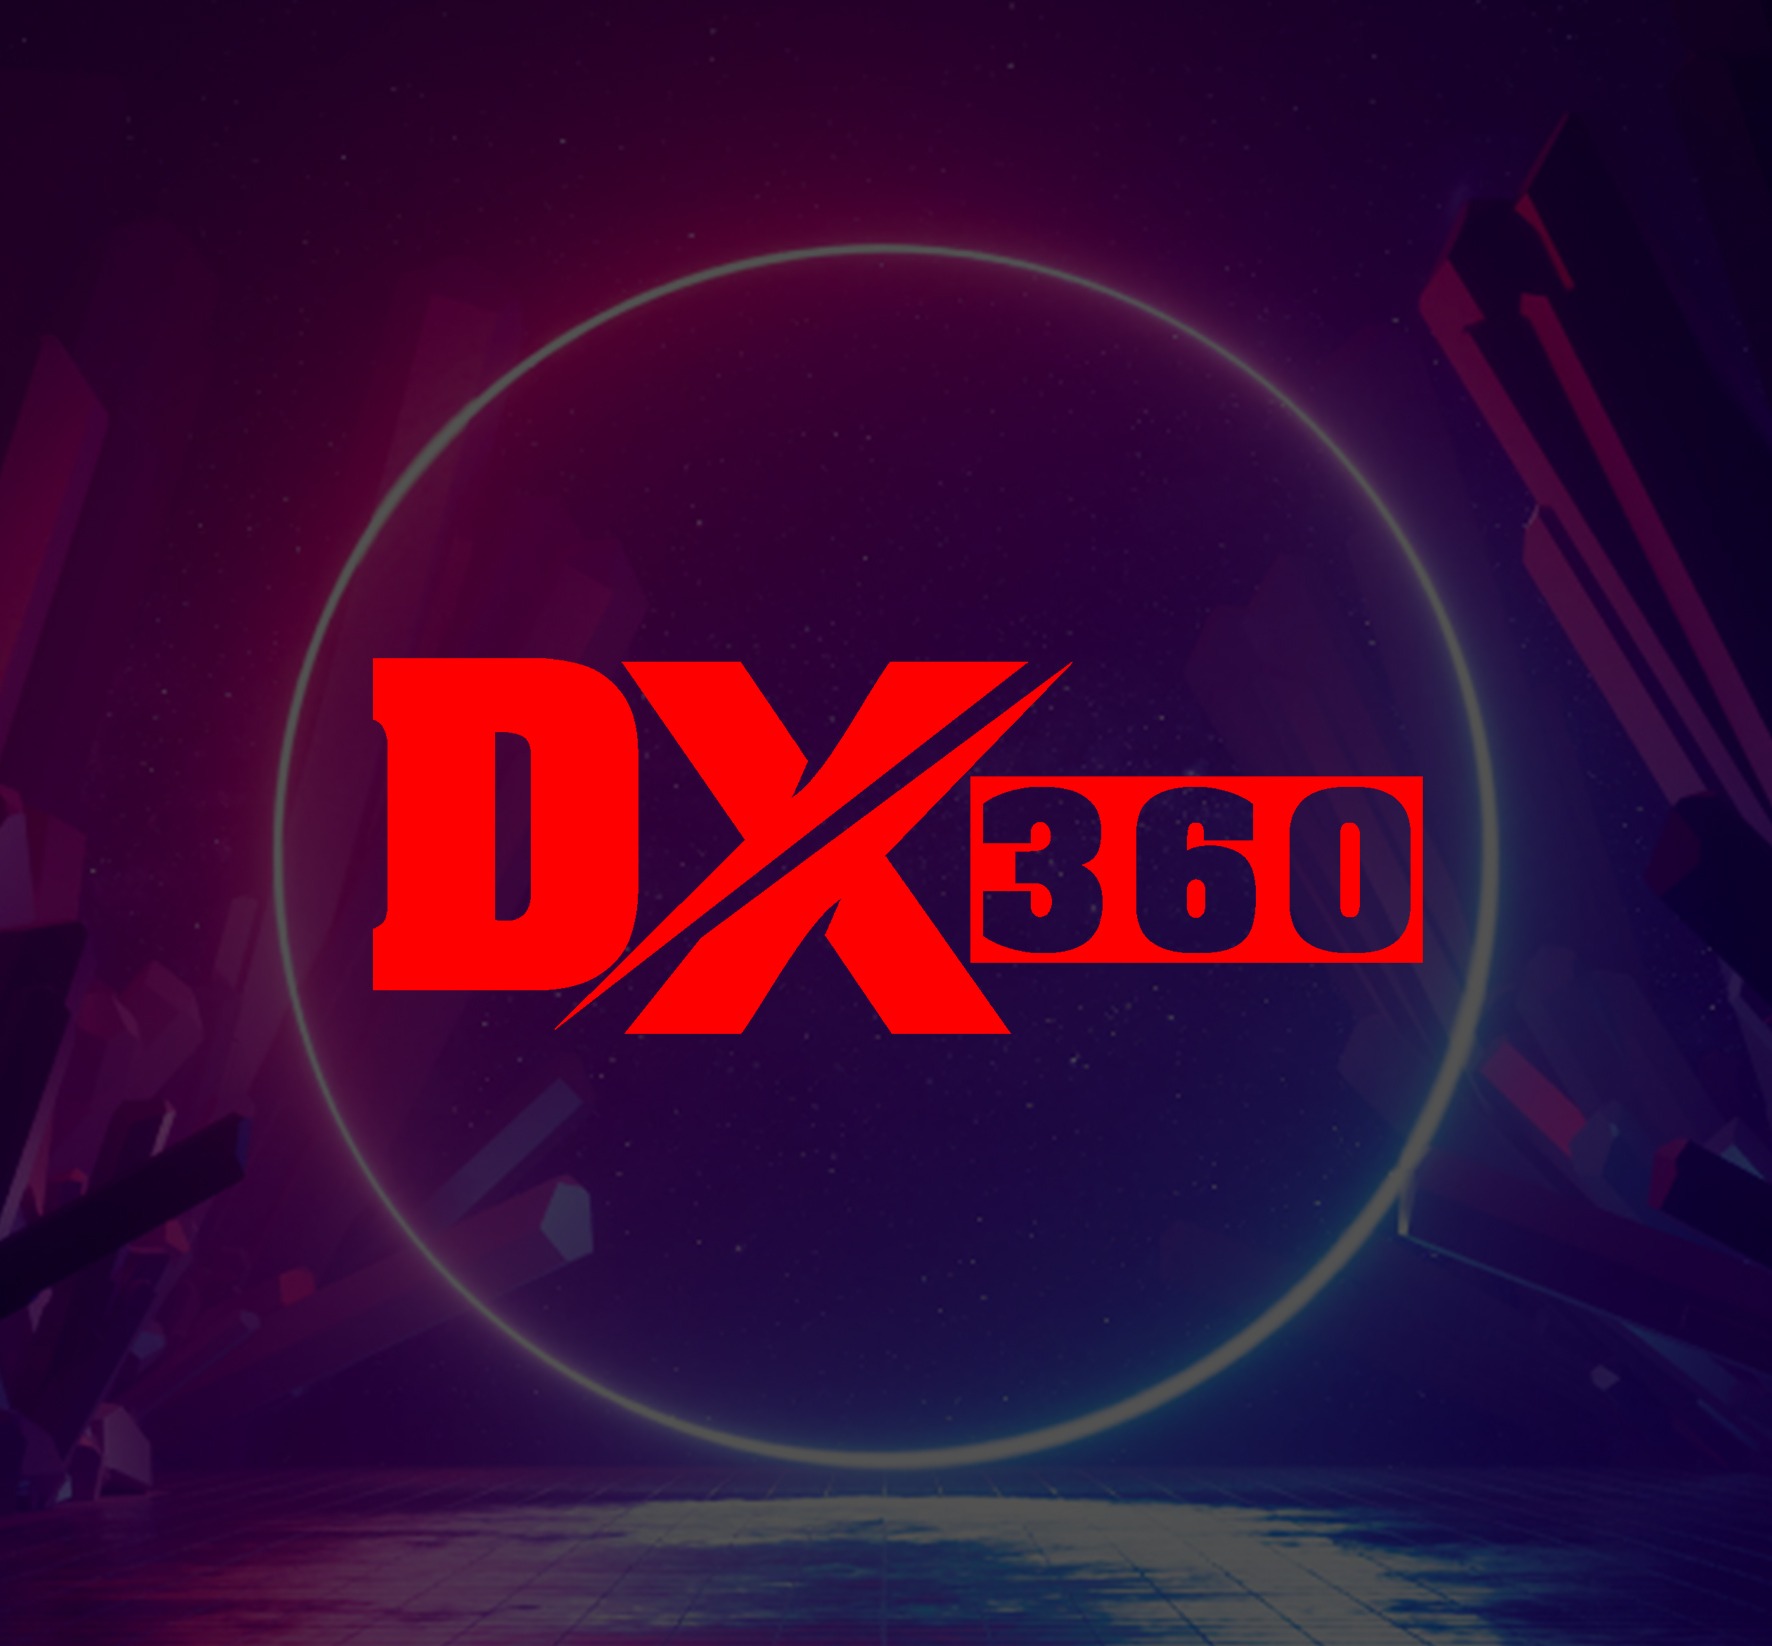 DX 360